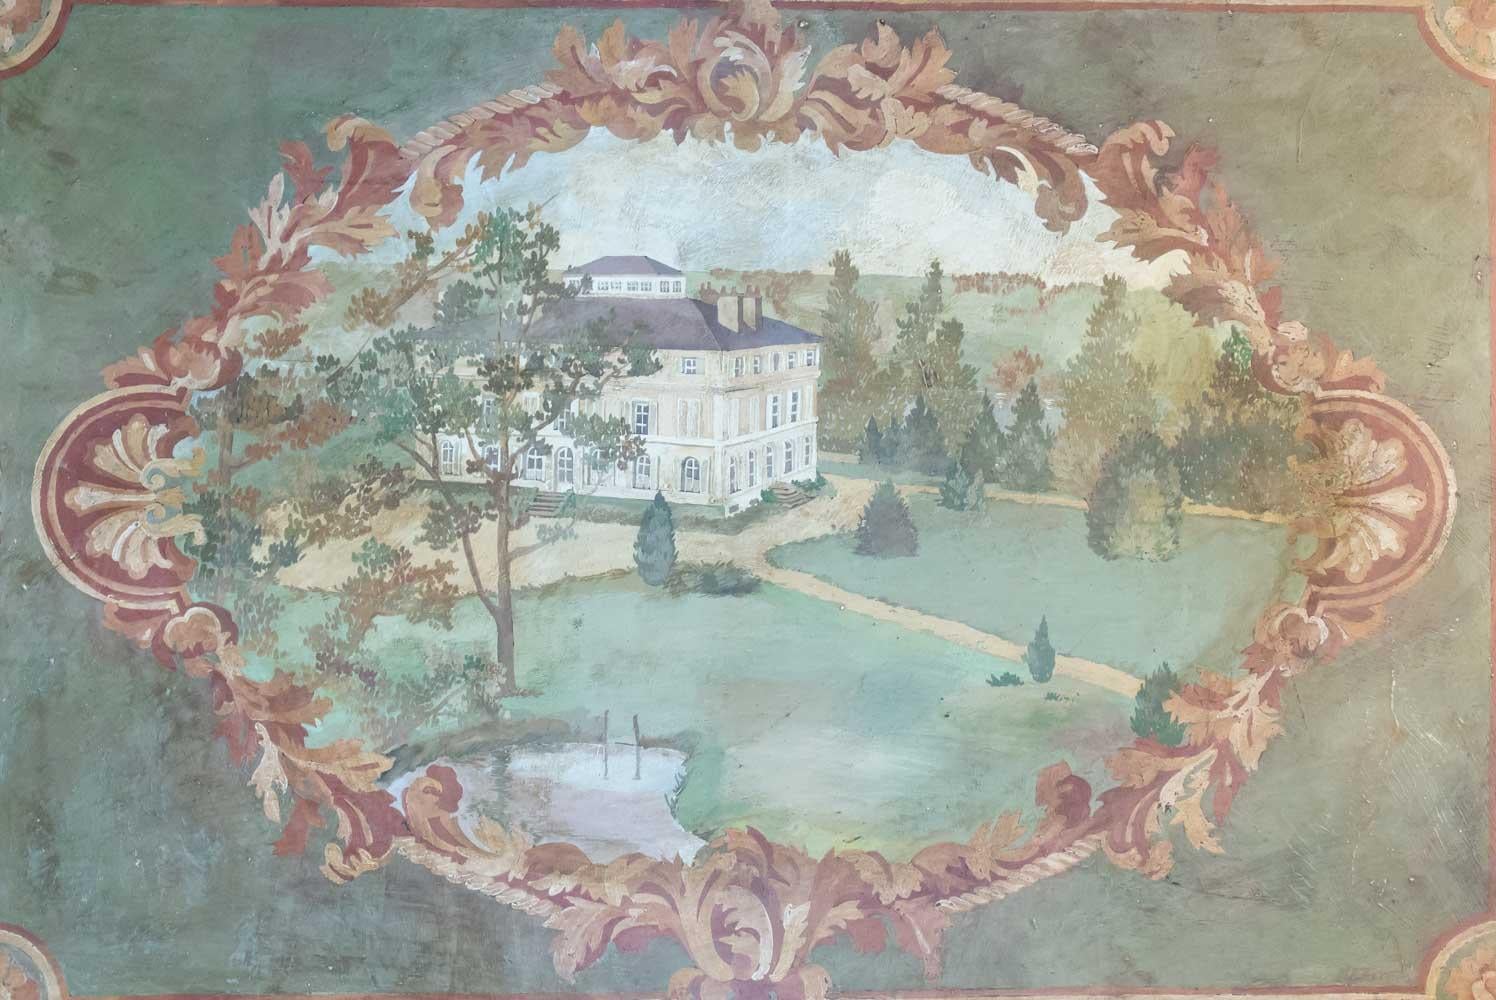 Oil on canvas 20th century of the Chateau de la Marche en Nievre.
Measures: H 90cm, L 130cm, P 3cm.